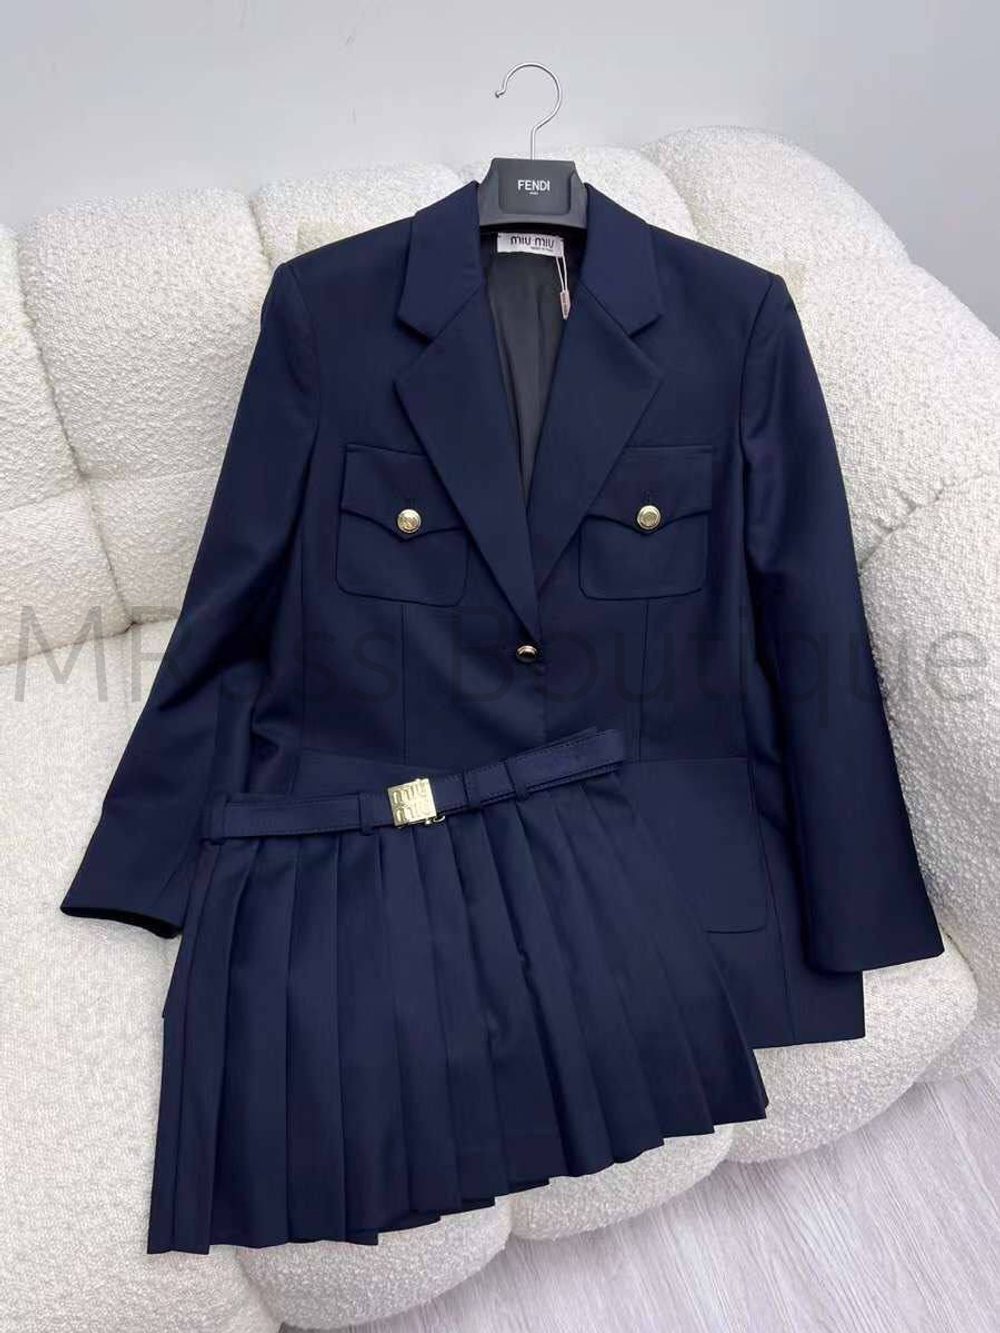 Женский костюм Miu Miu пиджак + юбка